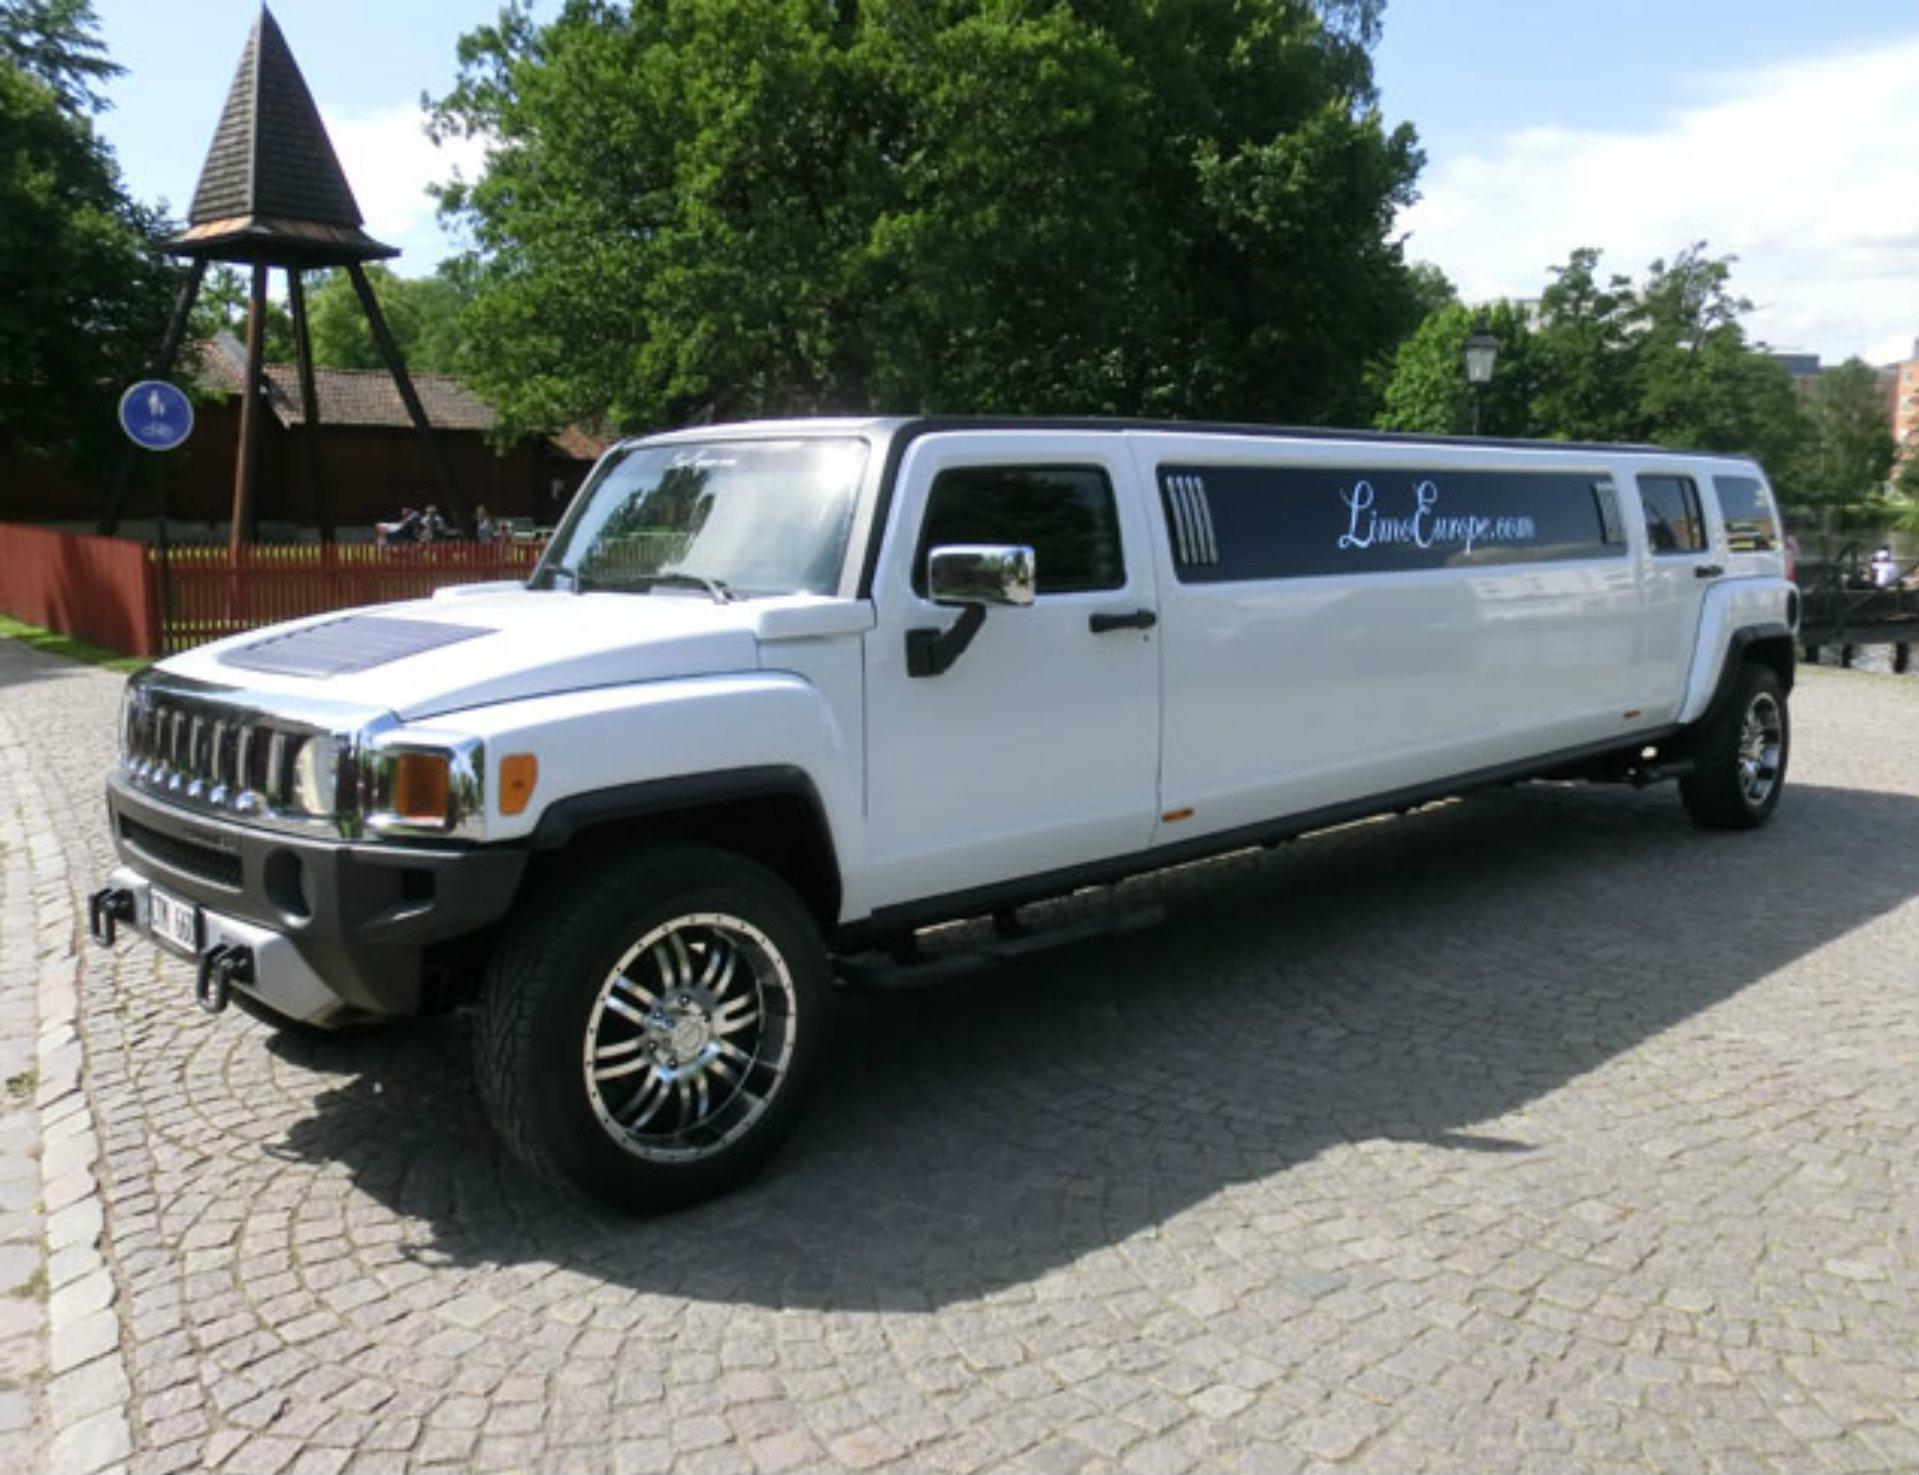 Tour en Hummer H3 stretch limousine